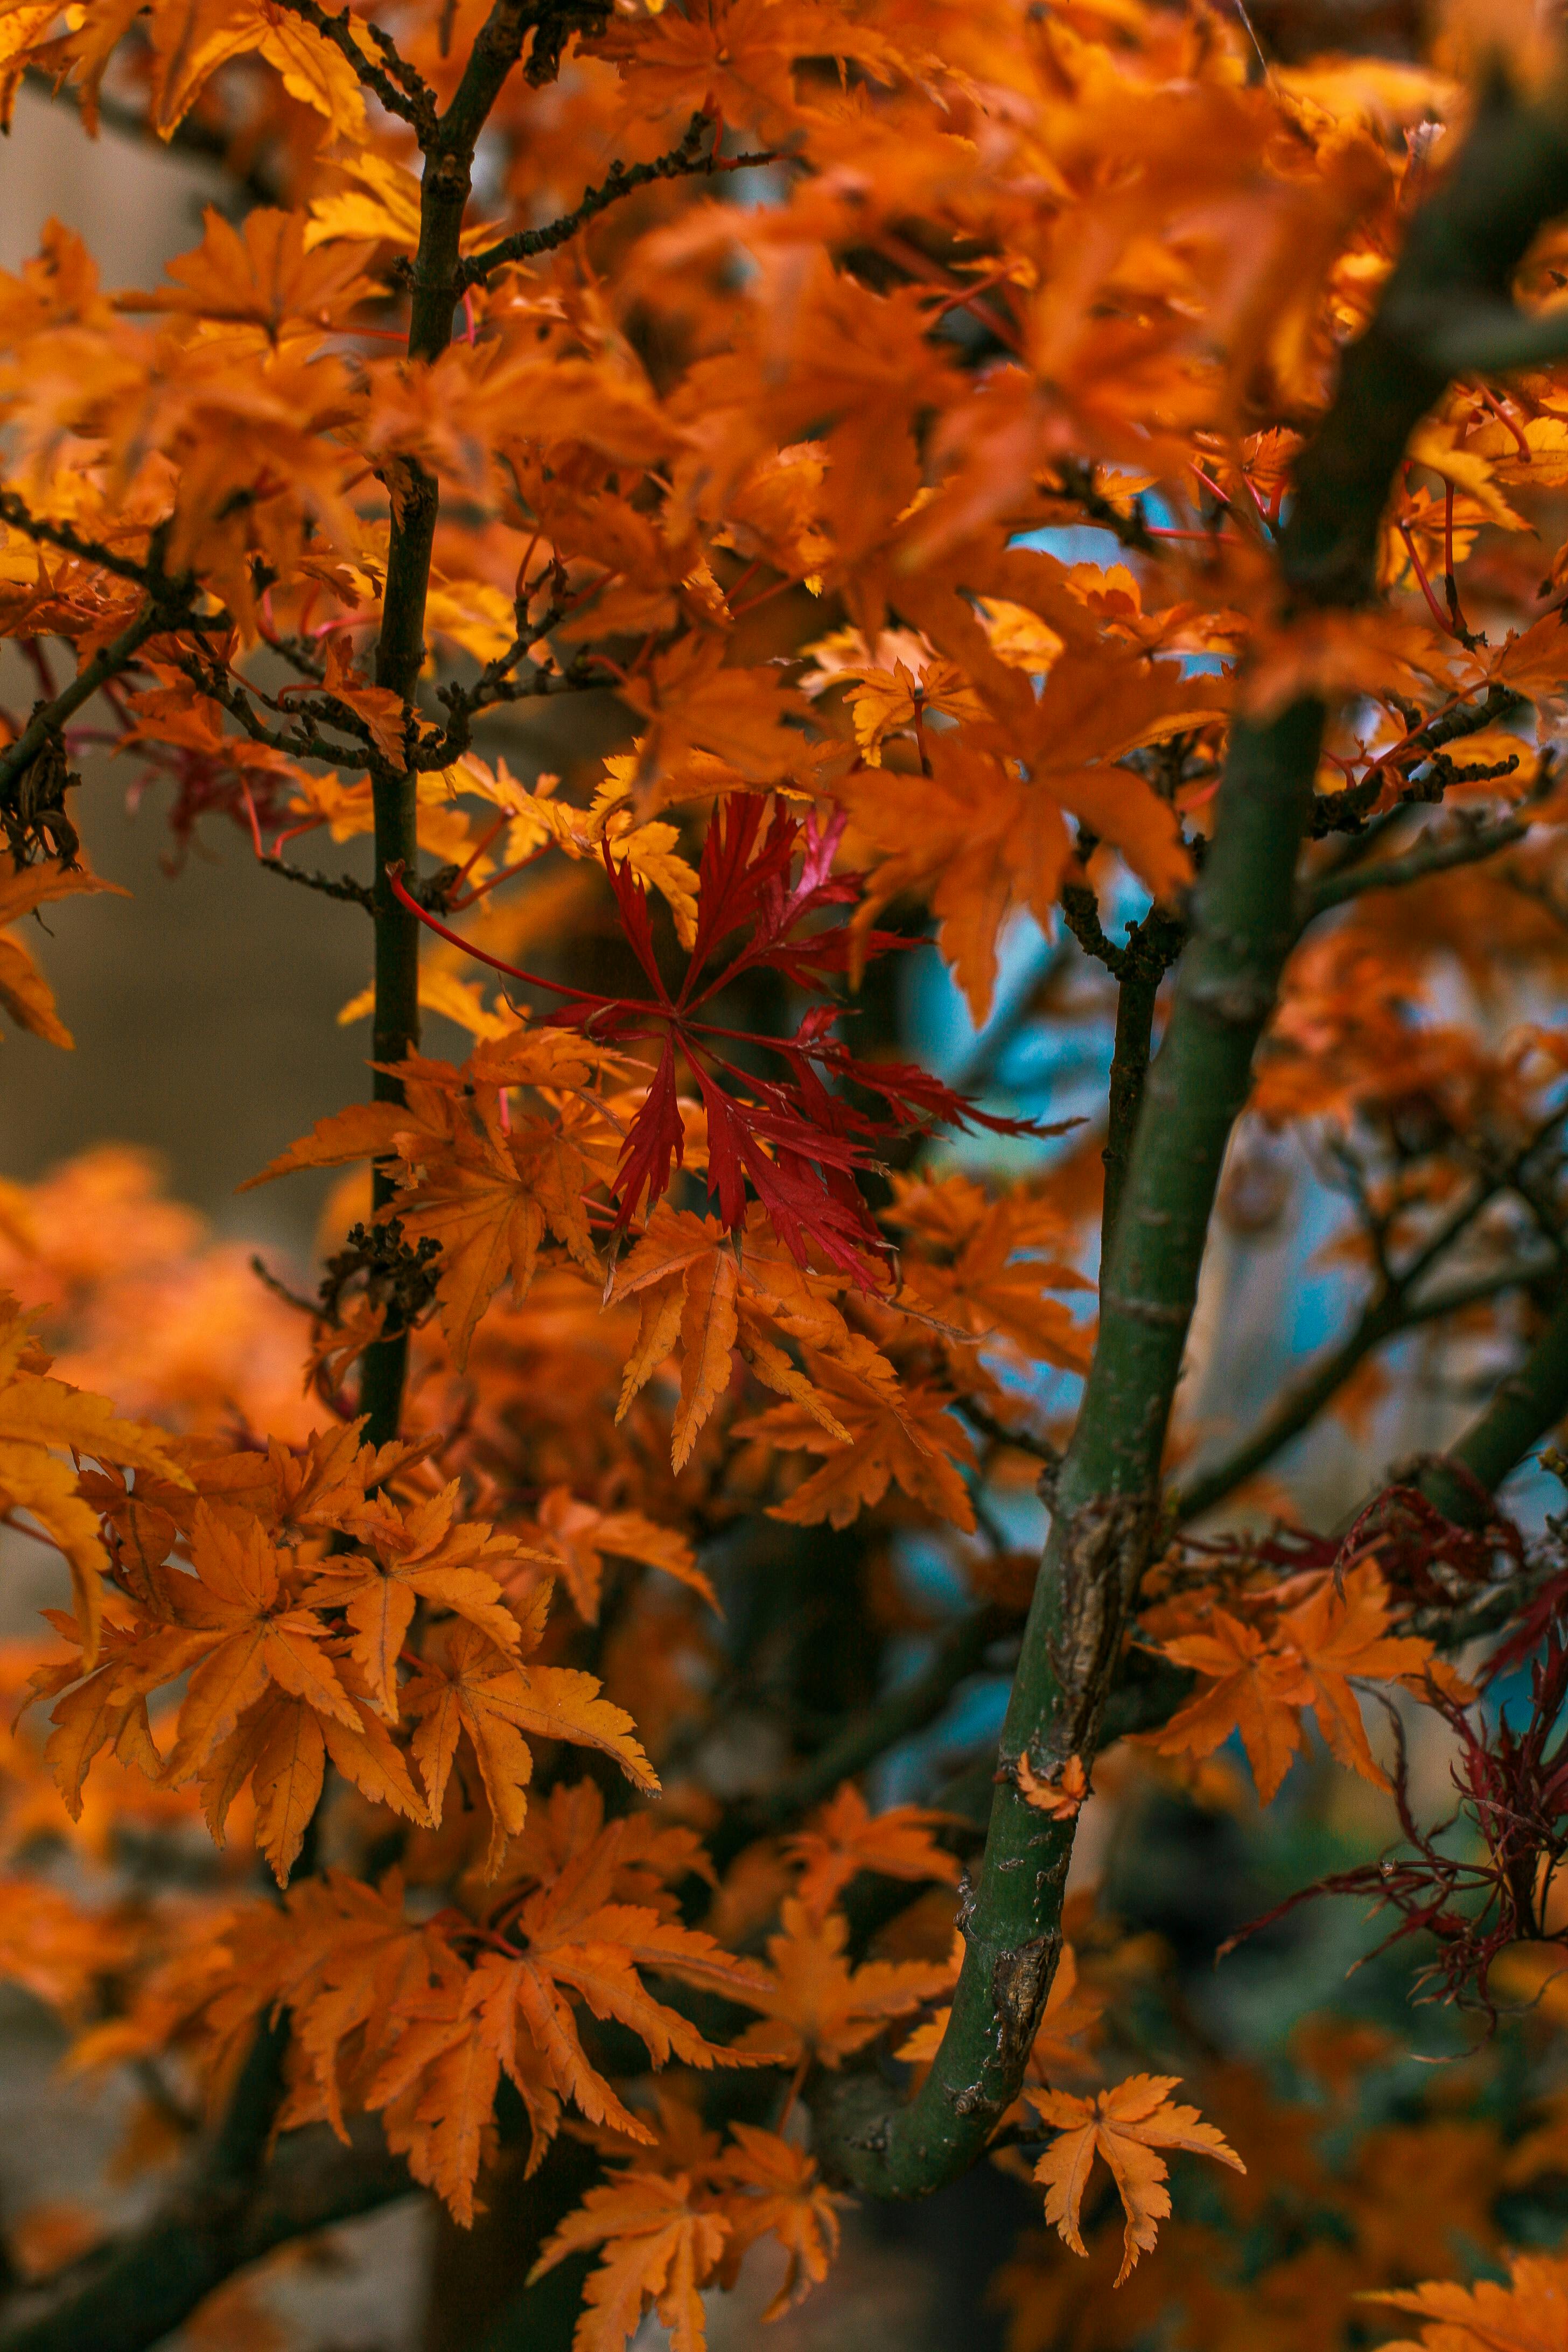 Rừng mùa thu có nhiều loại cây, nhưng cây lá đỏ cam chắc chắn là một trong những loại cây được yêu thích nhất. Nếu bạn chưa từng thấy, hãy xem ngay hình ảnh cây lá đỏ cam trong rừng mùa thu để thấy được sức hút của chúng.